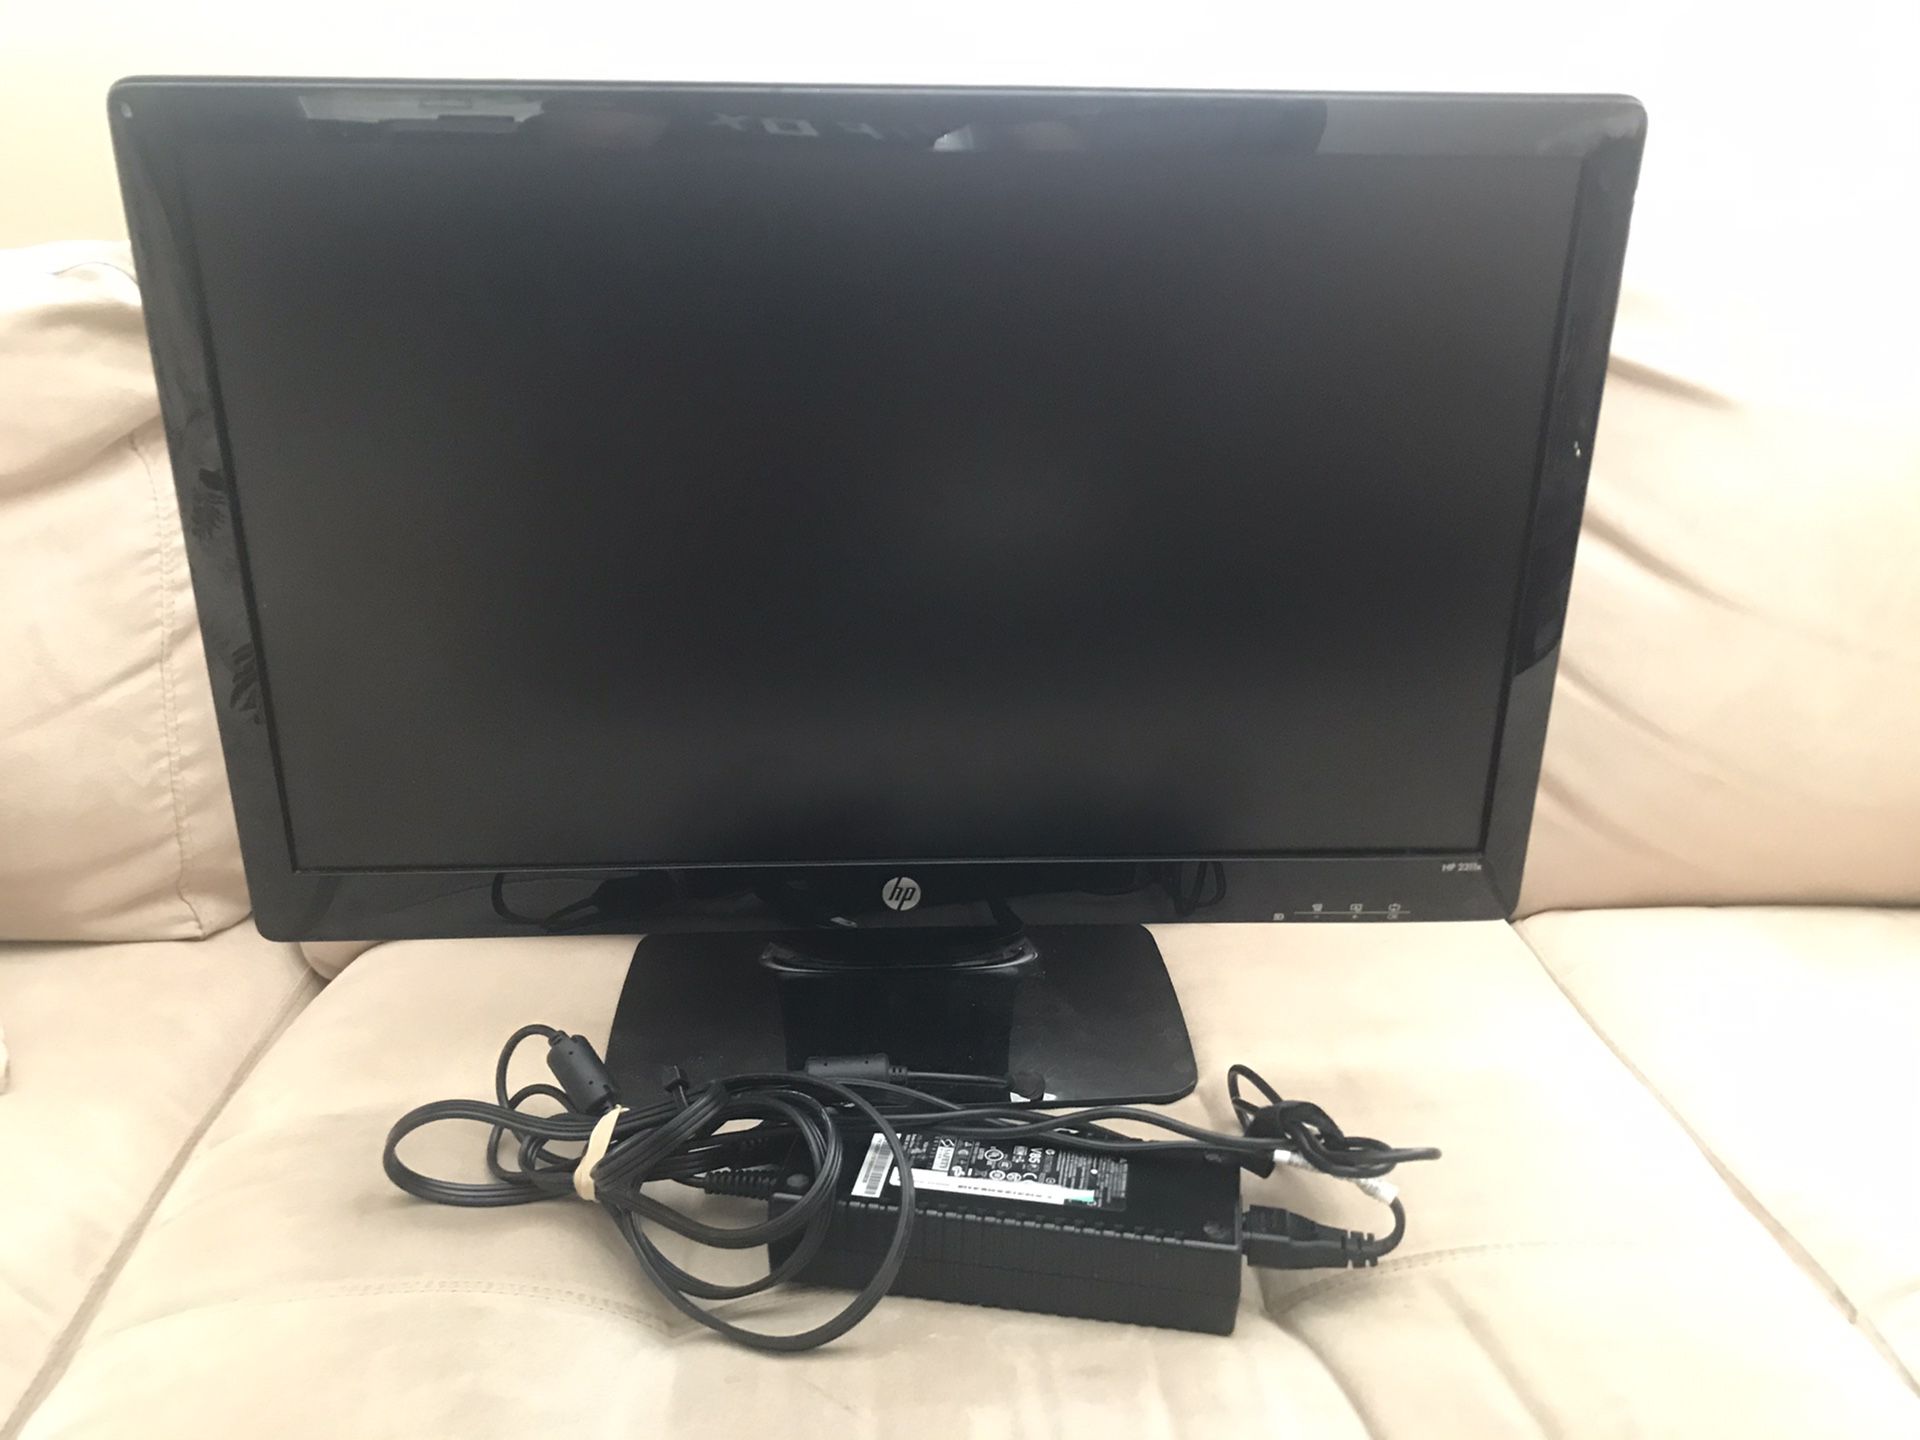 23” HP computer monitor